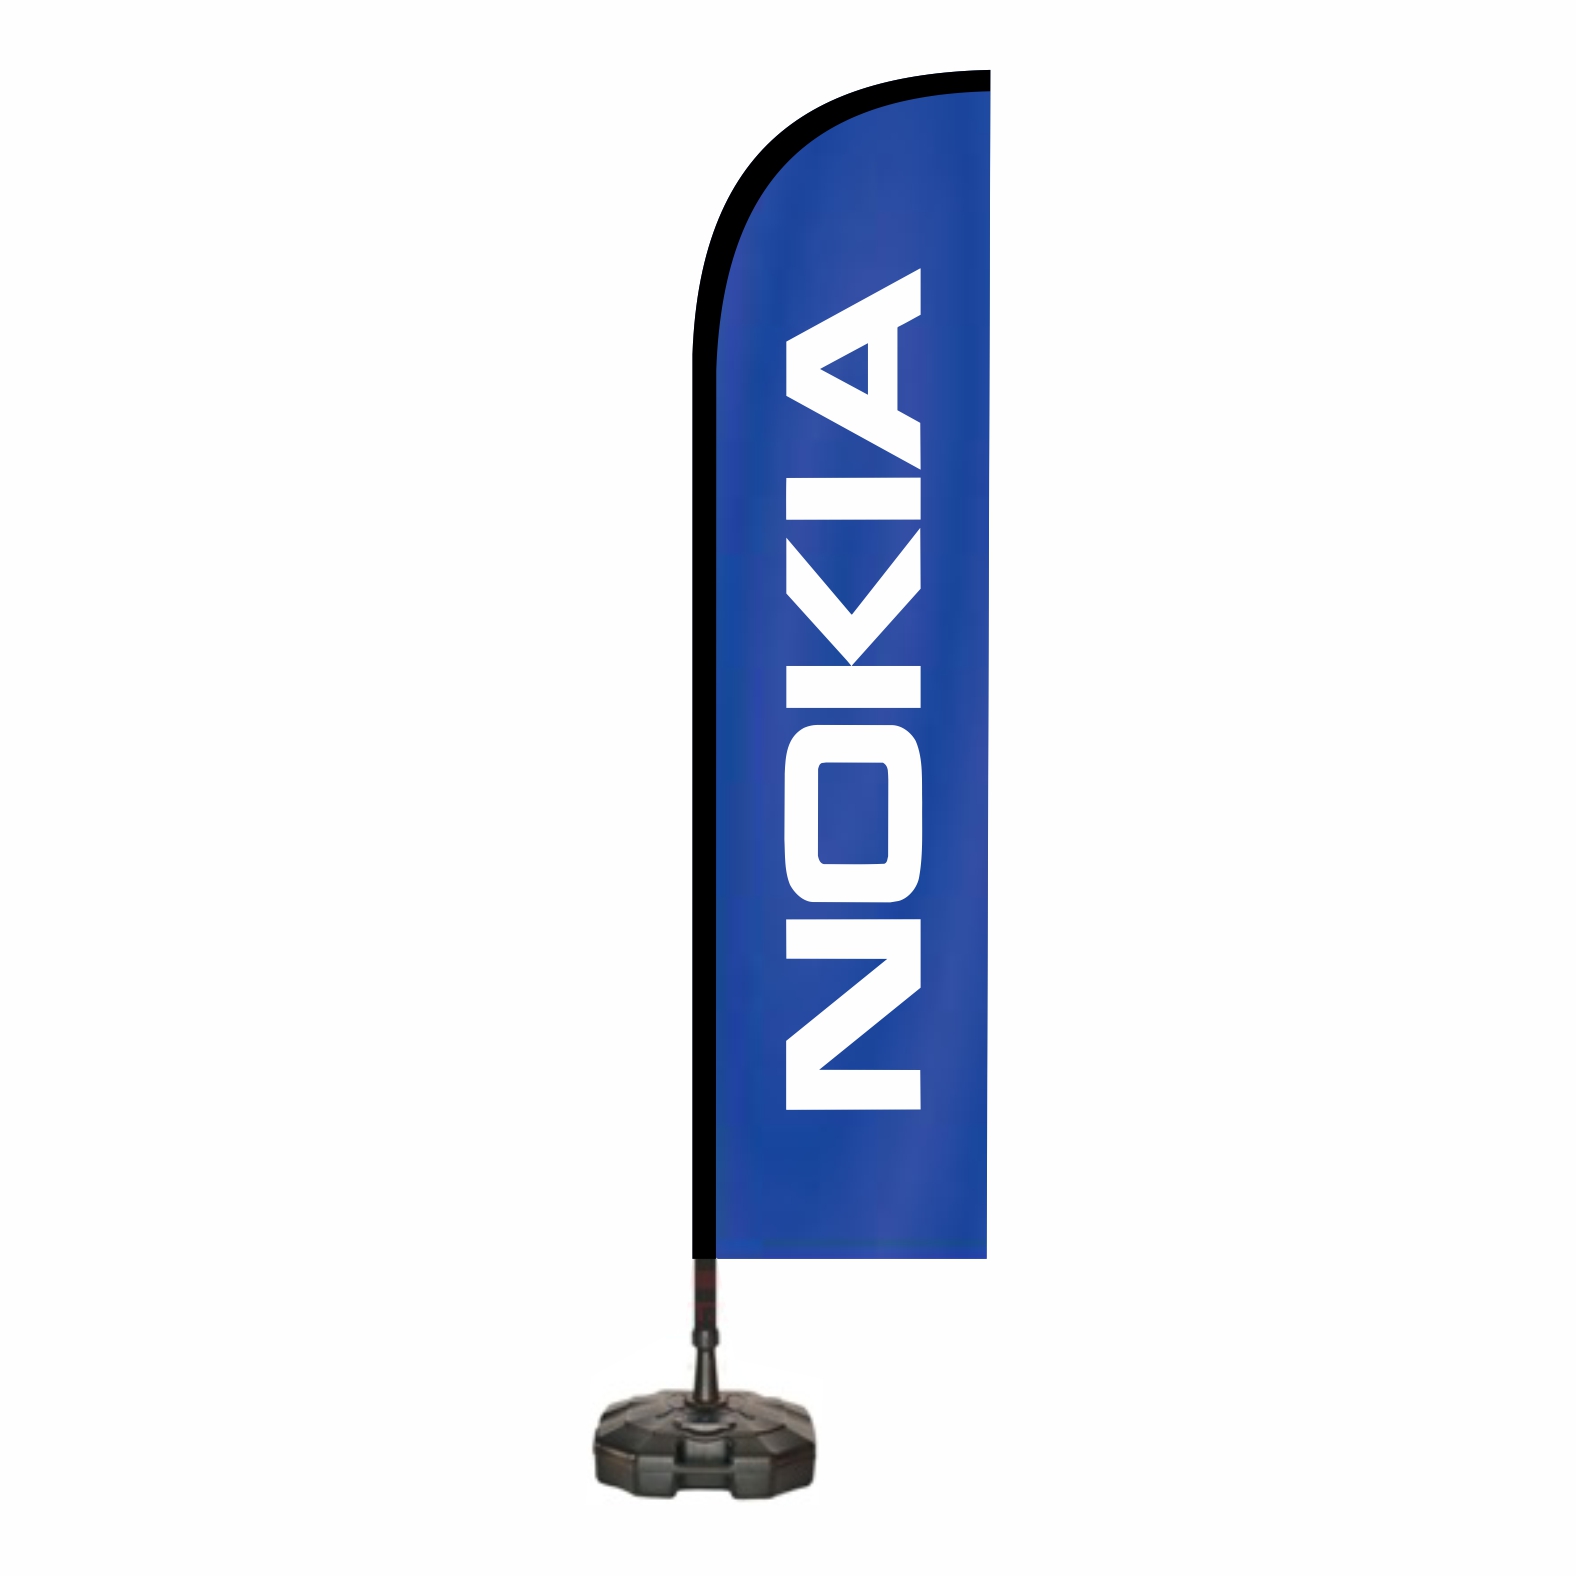 Nokia Yelken Bayraklar retim